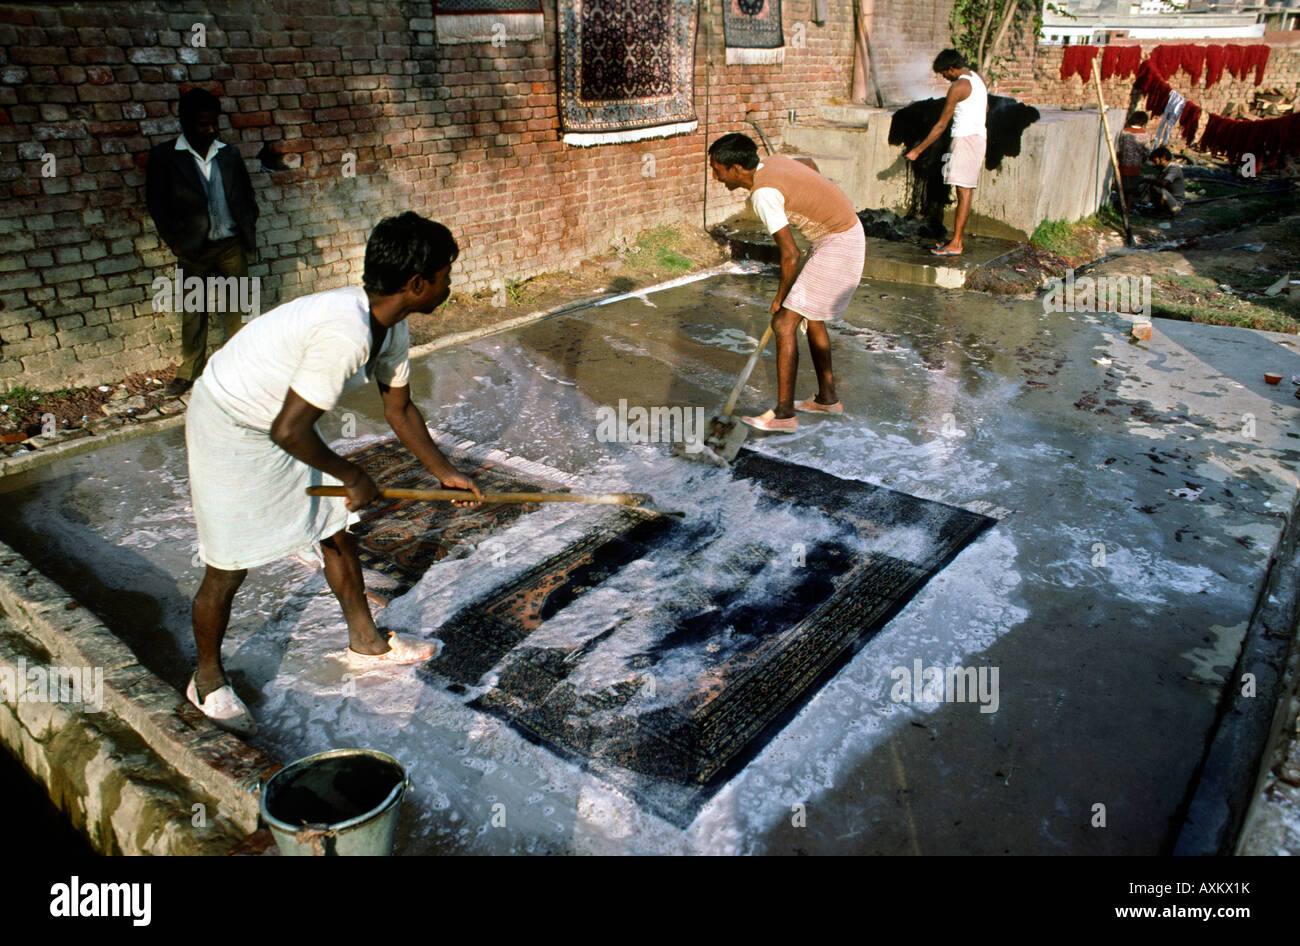 India crafts Uttar Pradesh Agra carpet making men washing newly made carpet Stock Photo